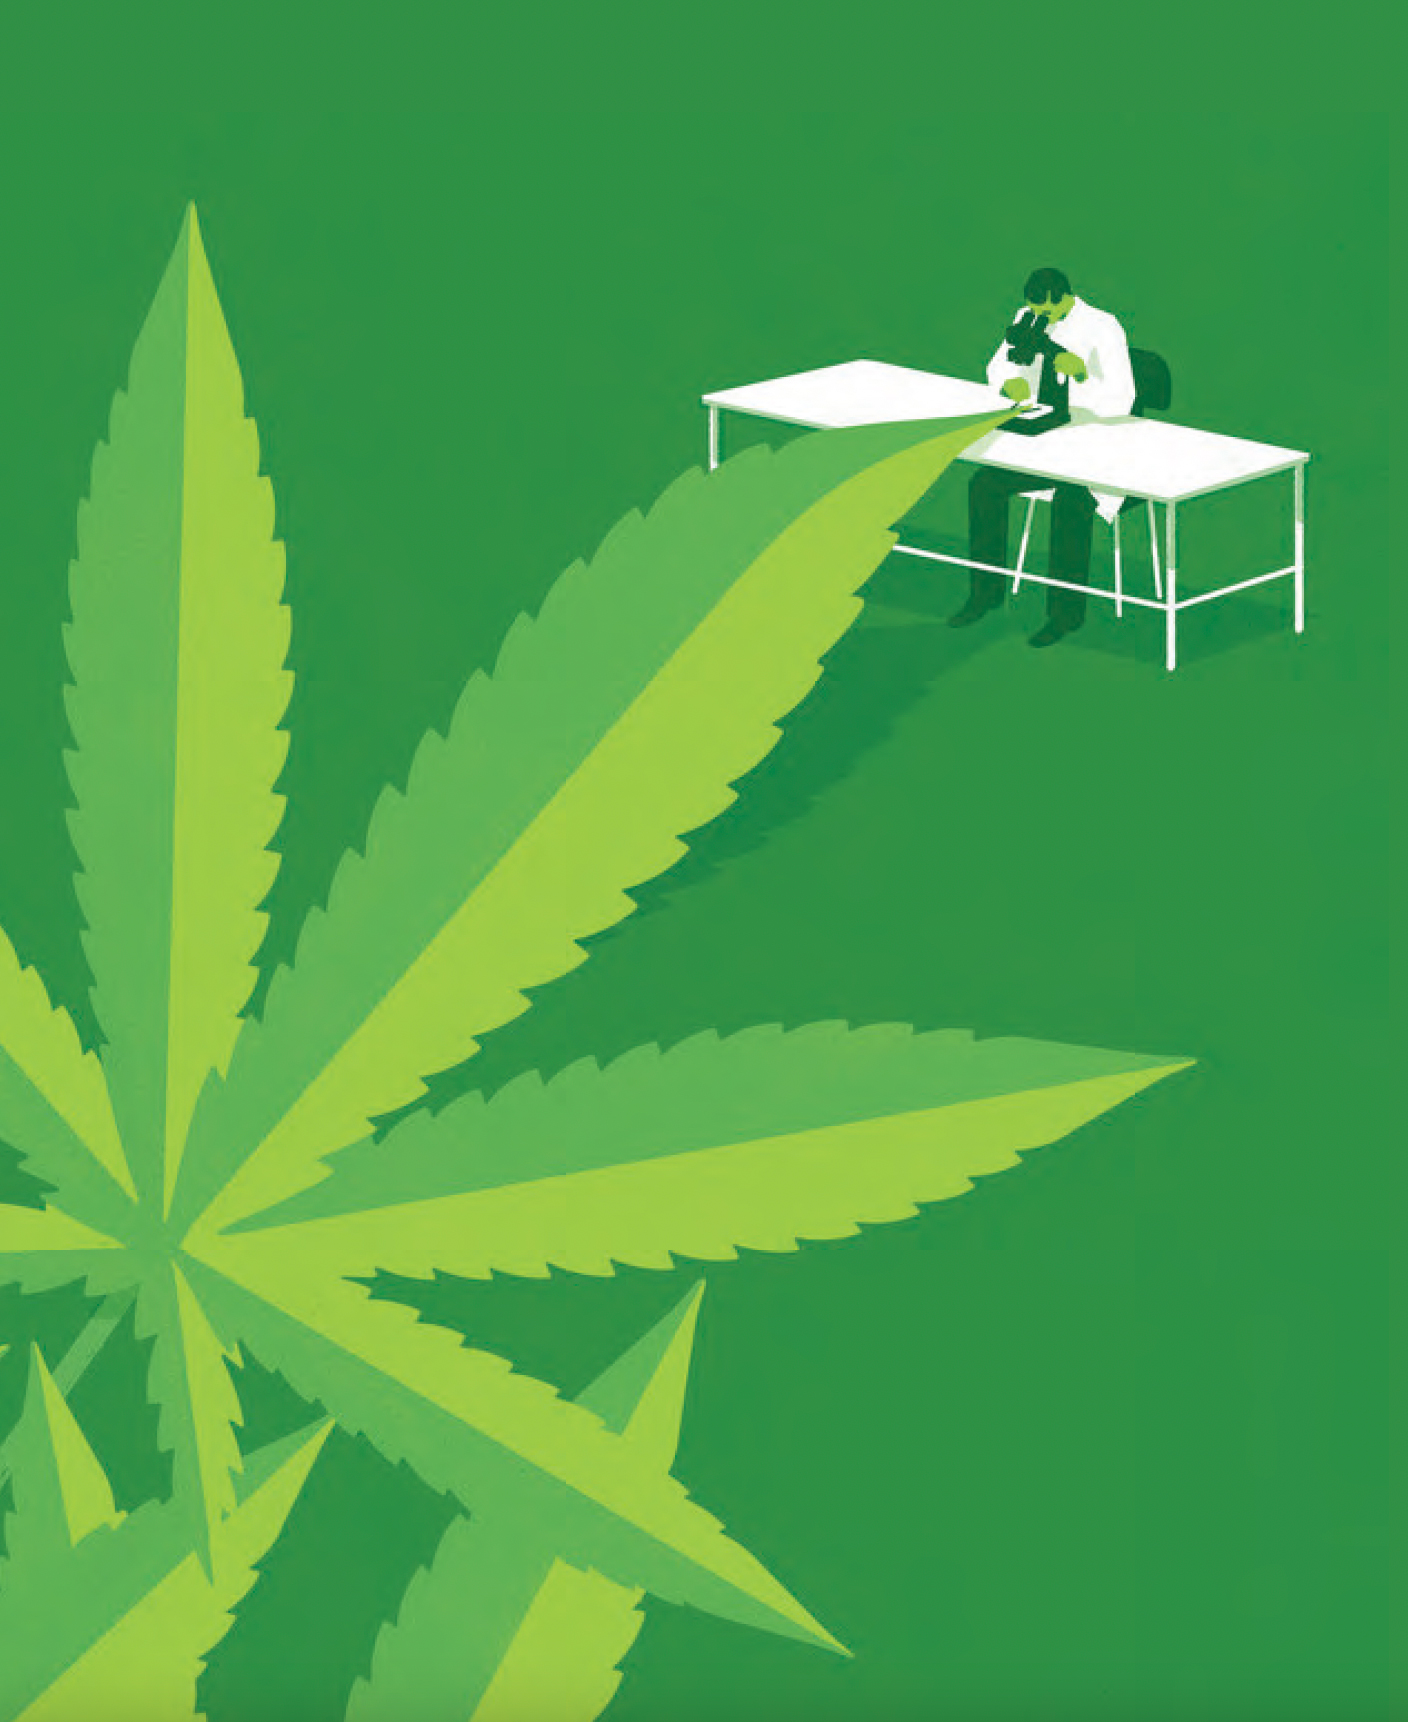 medical marijuana controversial issue